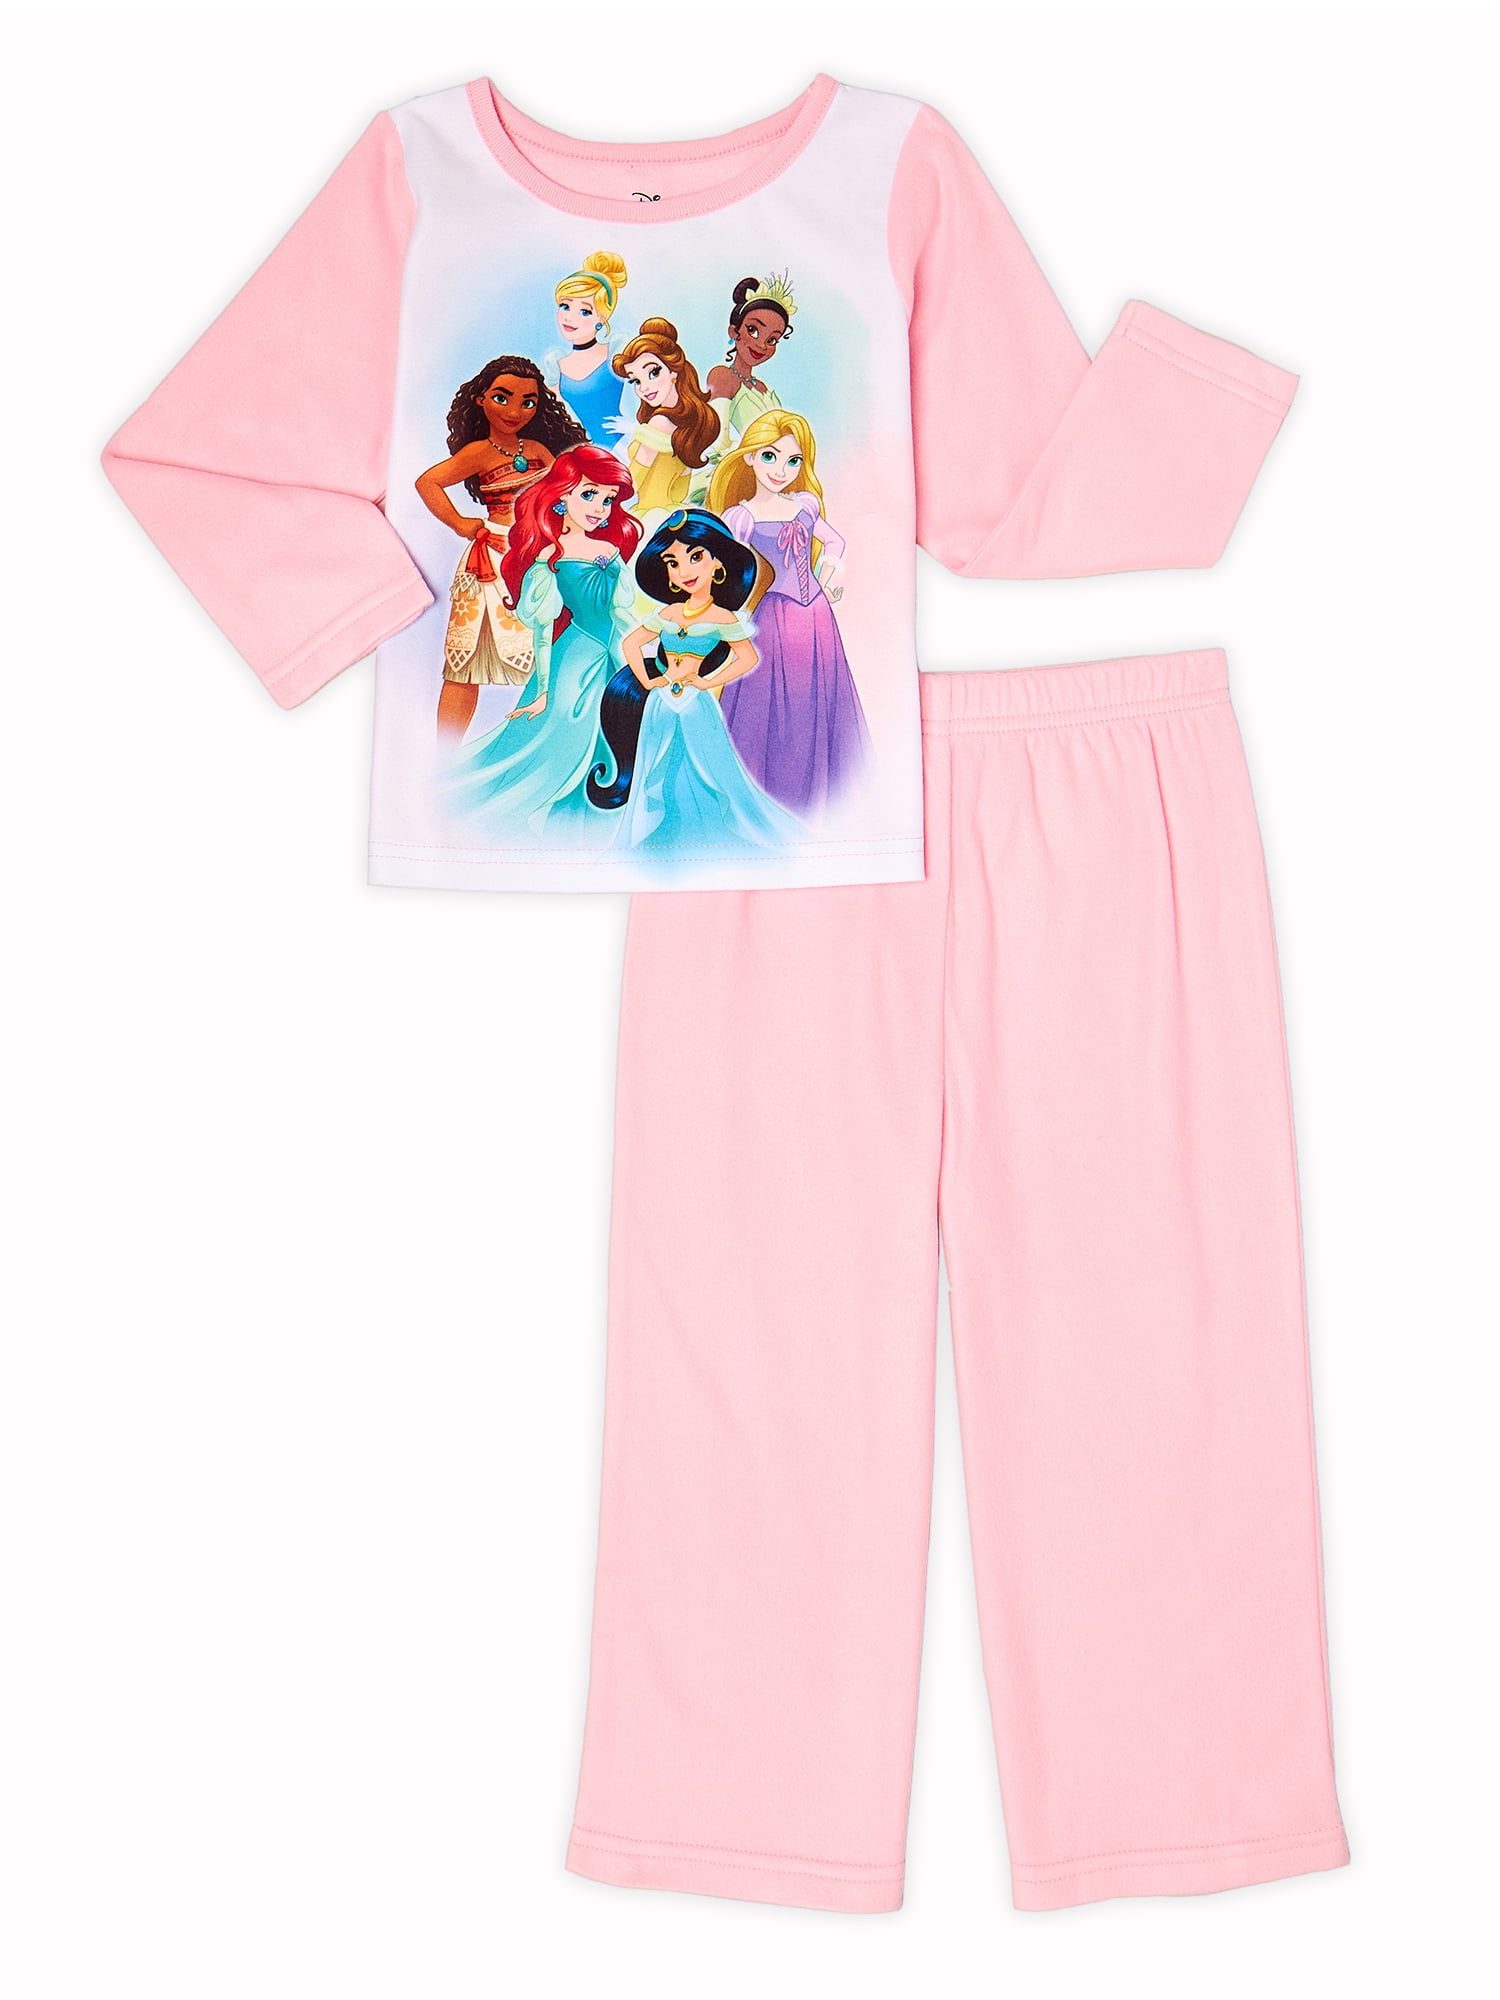 Details about   Disney Frozen Elsa Nightgown Size 4T 7/8T 10T 